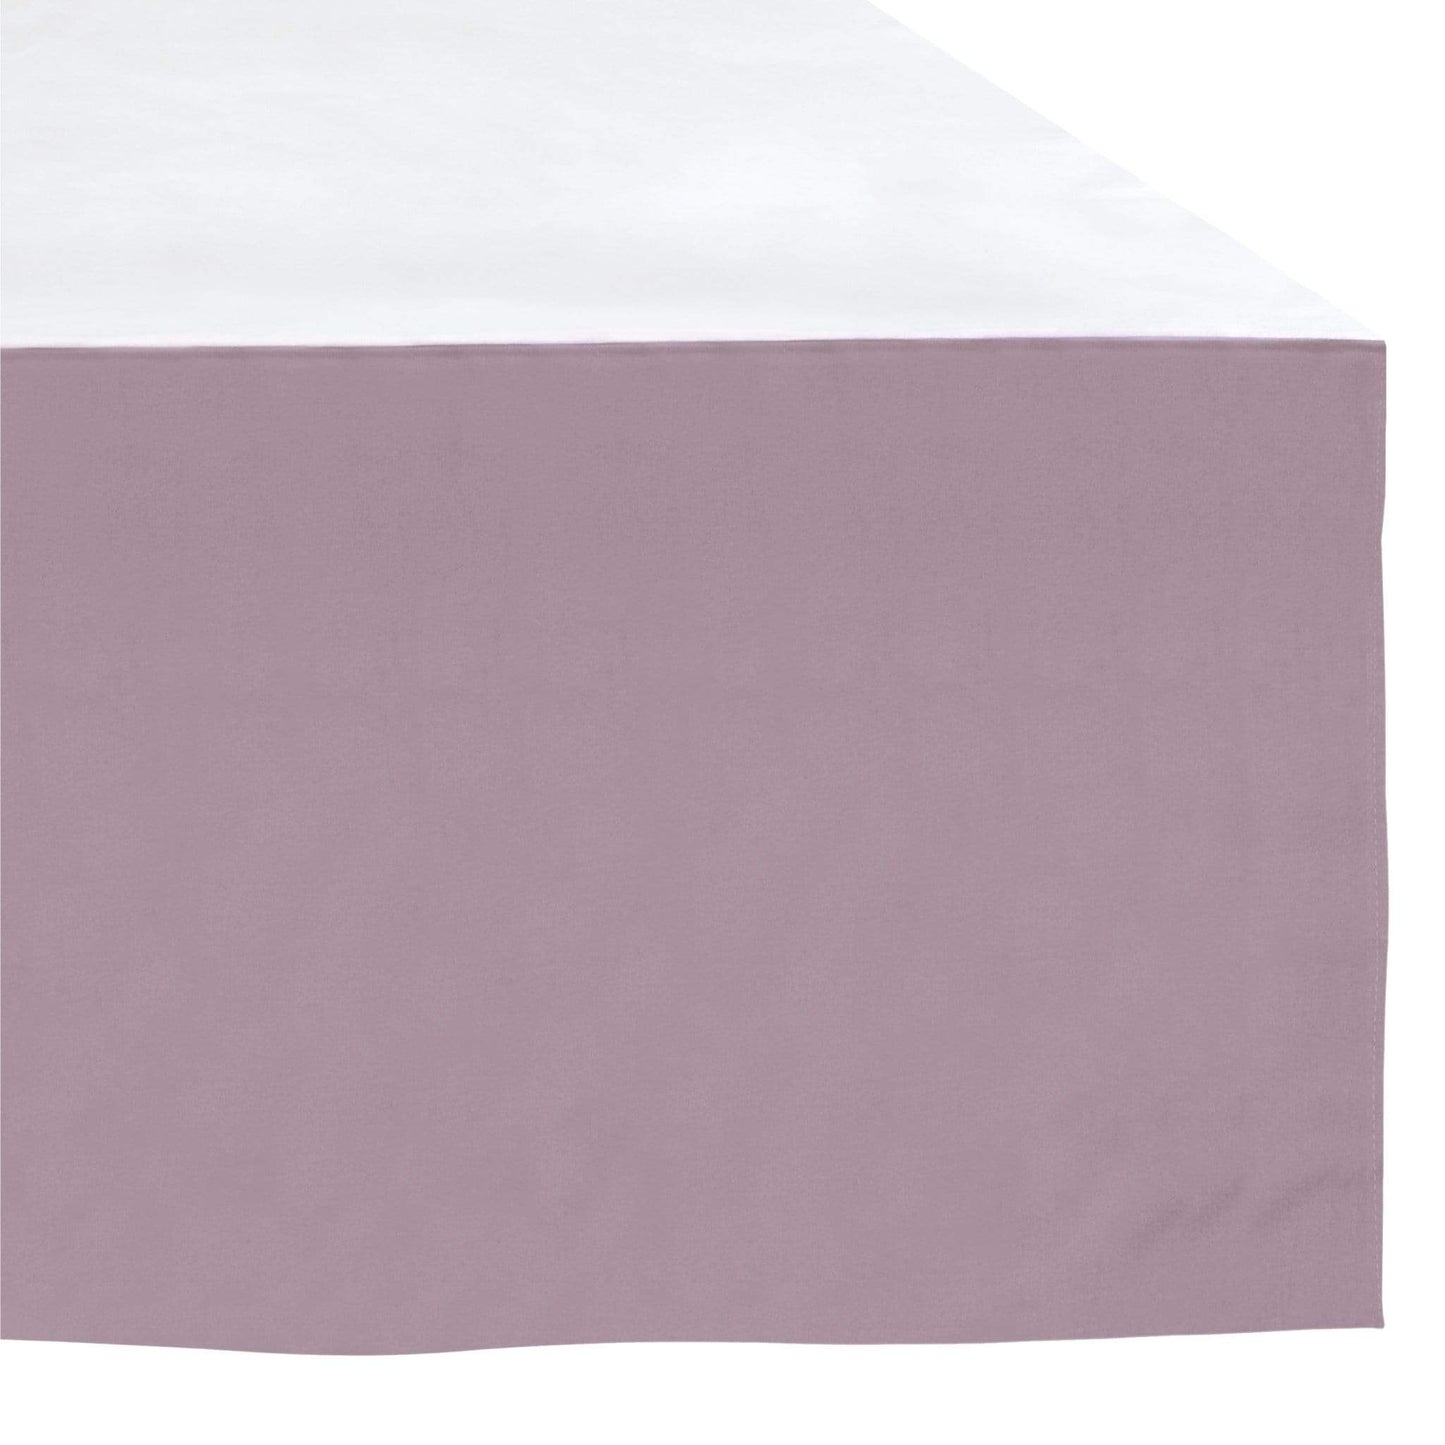 Crib bed skirt - plum